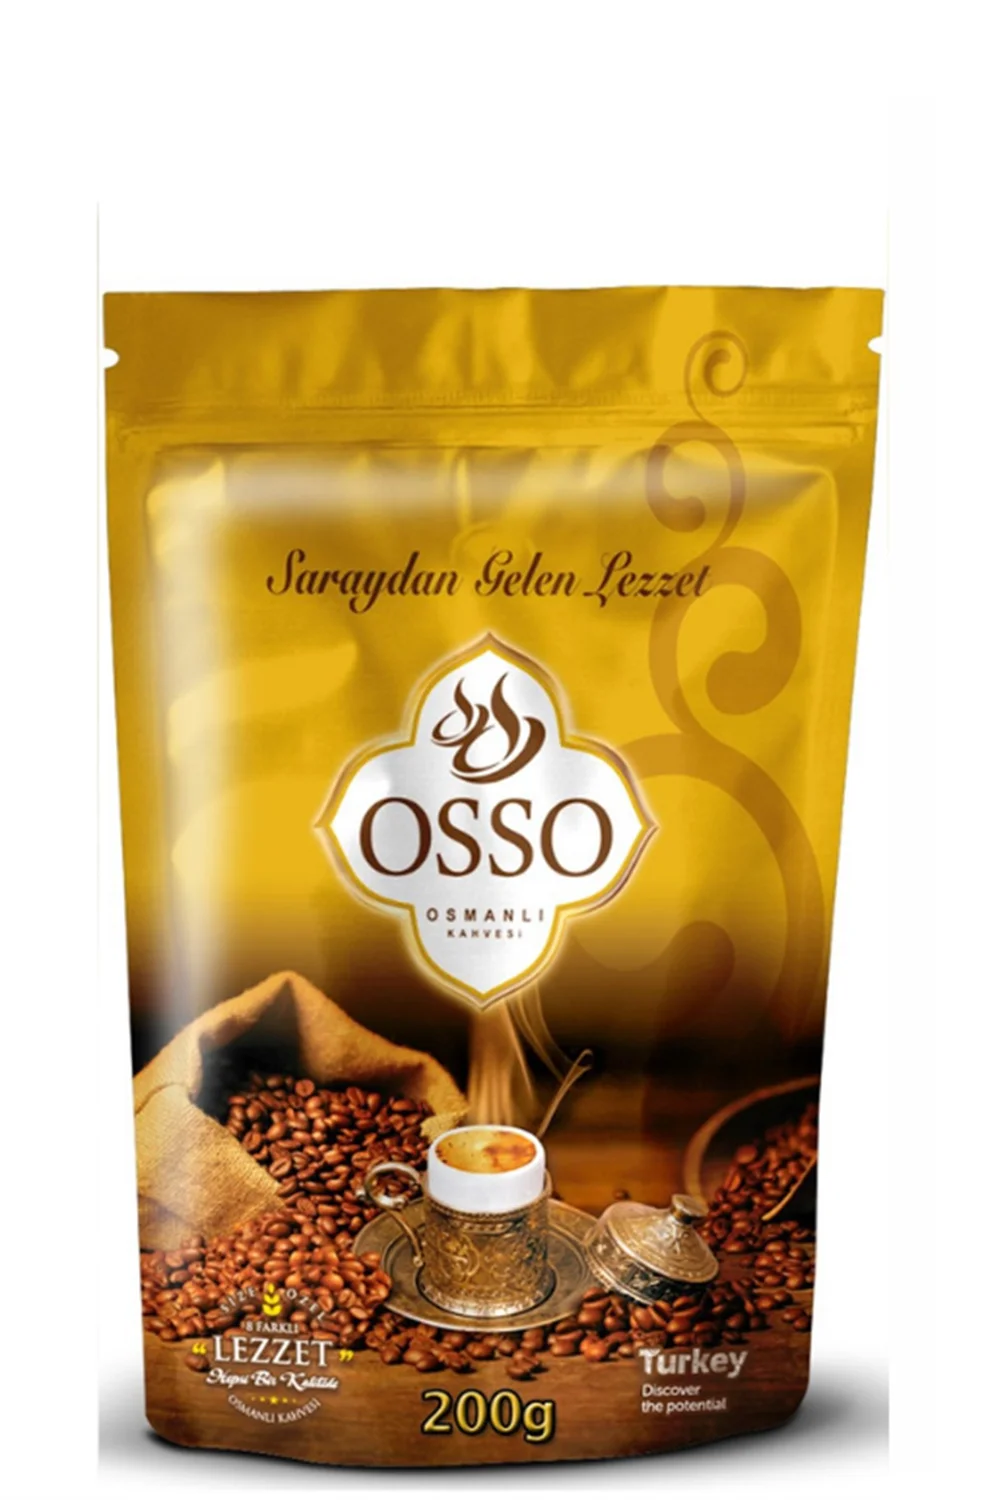 Osso-оттоманский кофе г. от AliExpress RU&CIS NEW